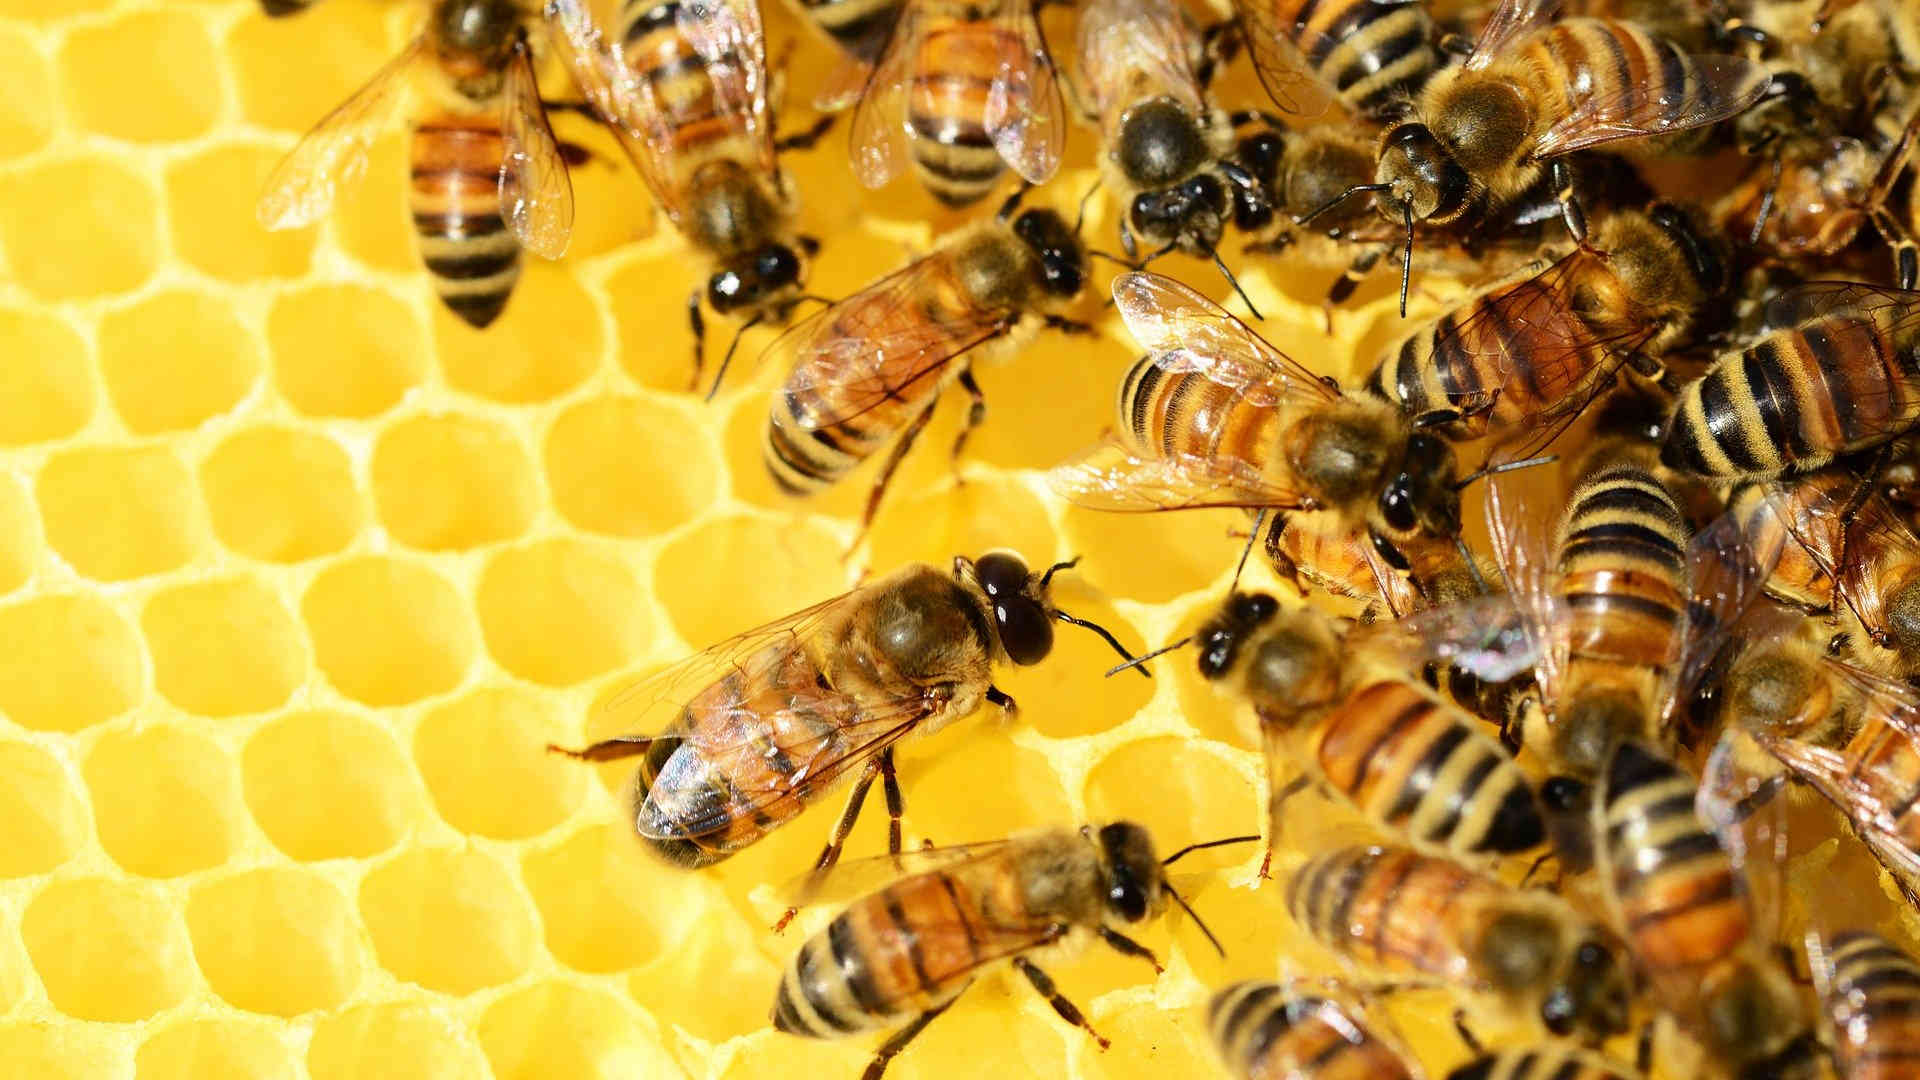 Wir sehen viele fleißige Honig-Bienen in ihrem Bienenstock. Sie befüllen die Waben aus Wachs.